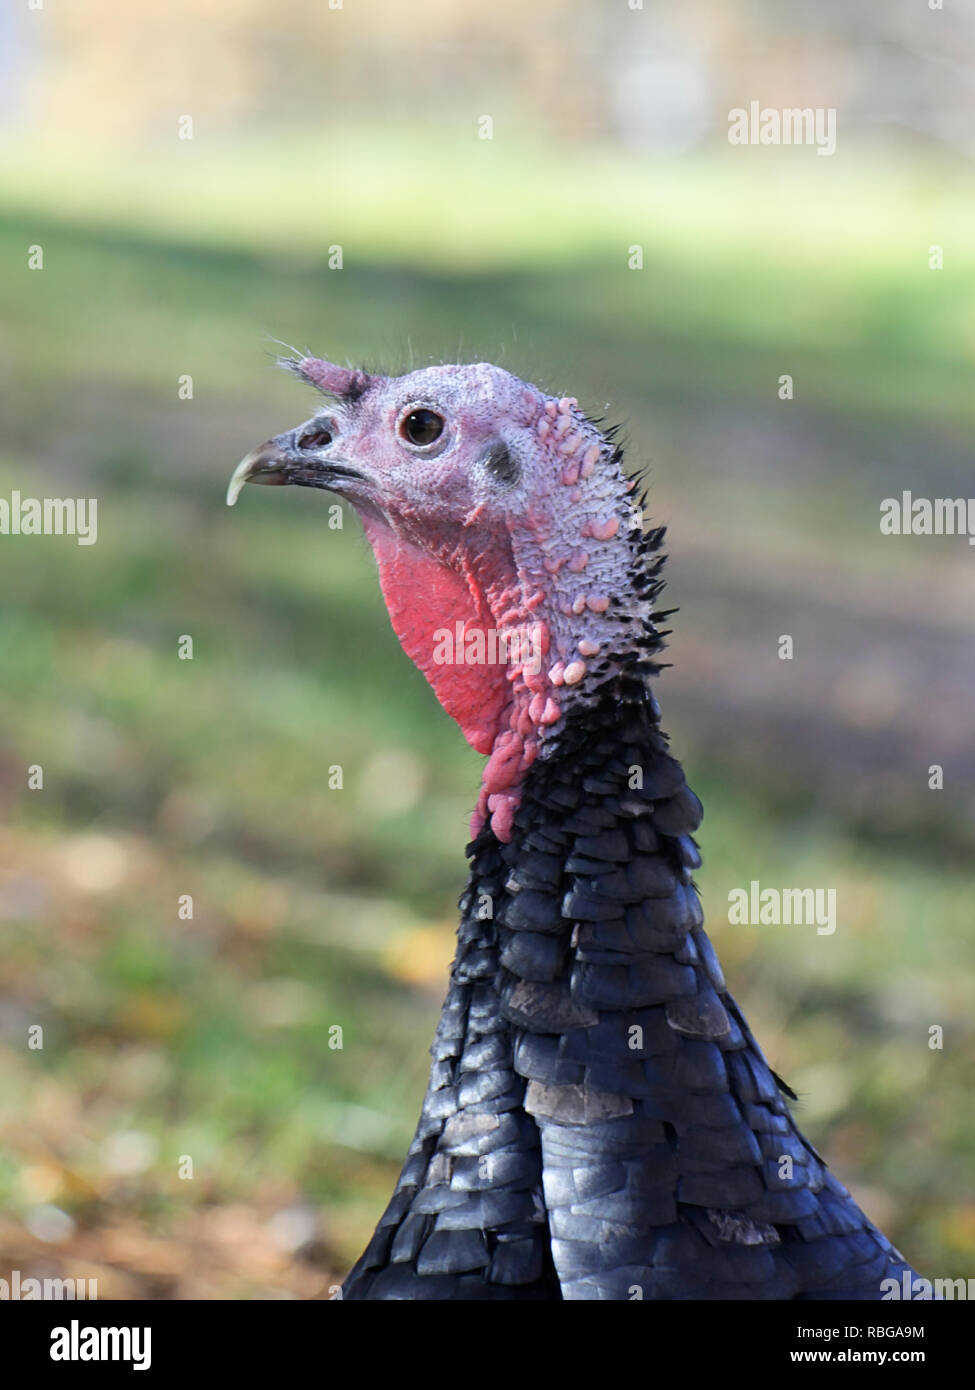 La Turchia domestici, Meleagris gallopavo, della gara 'Spanish nero' o 'Norfolk nero' Foto Stock